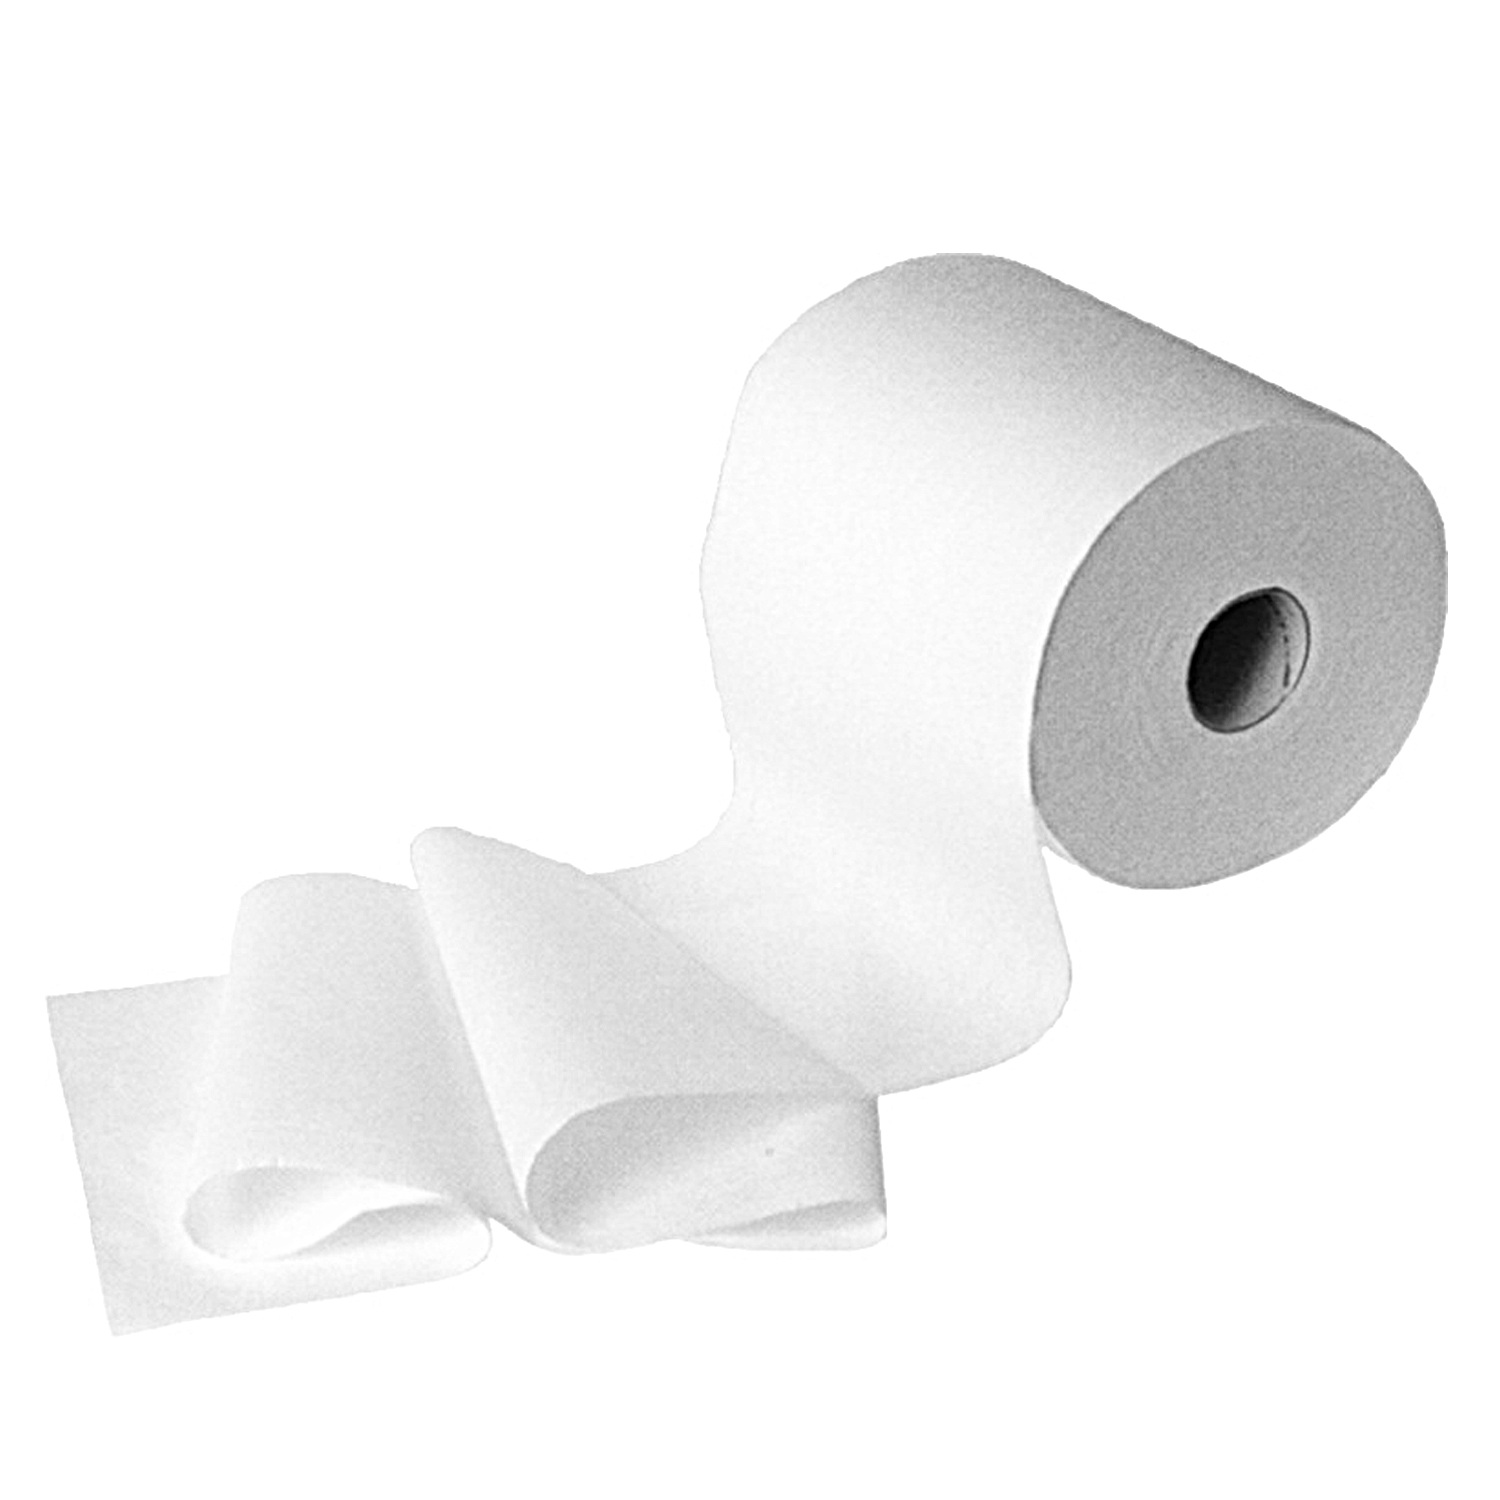 Handtuchrolle (Tissue FSC Mix) 2-lagig weiß 18cm 20cm x 150m - 6 Stück